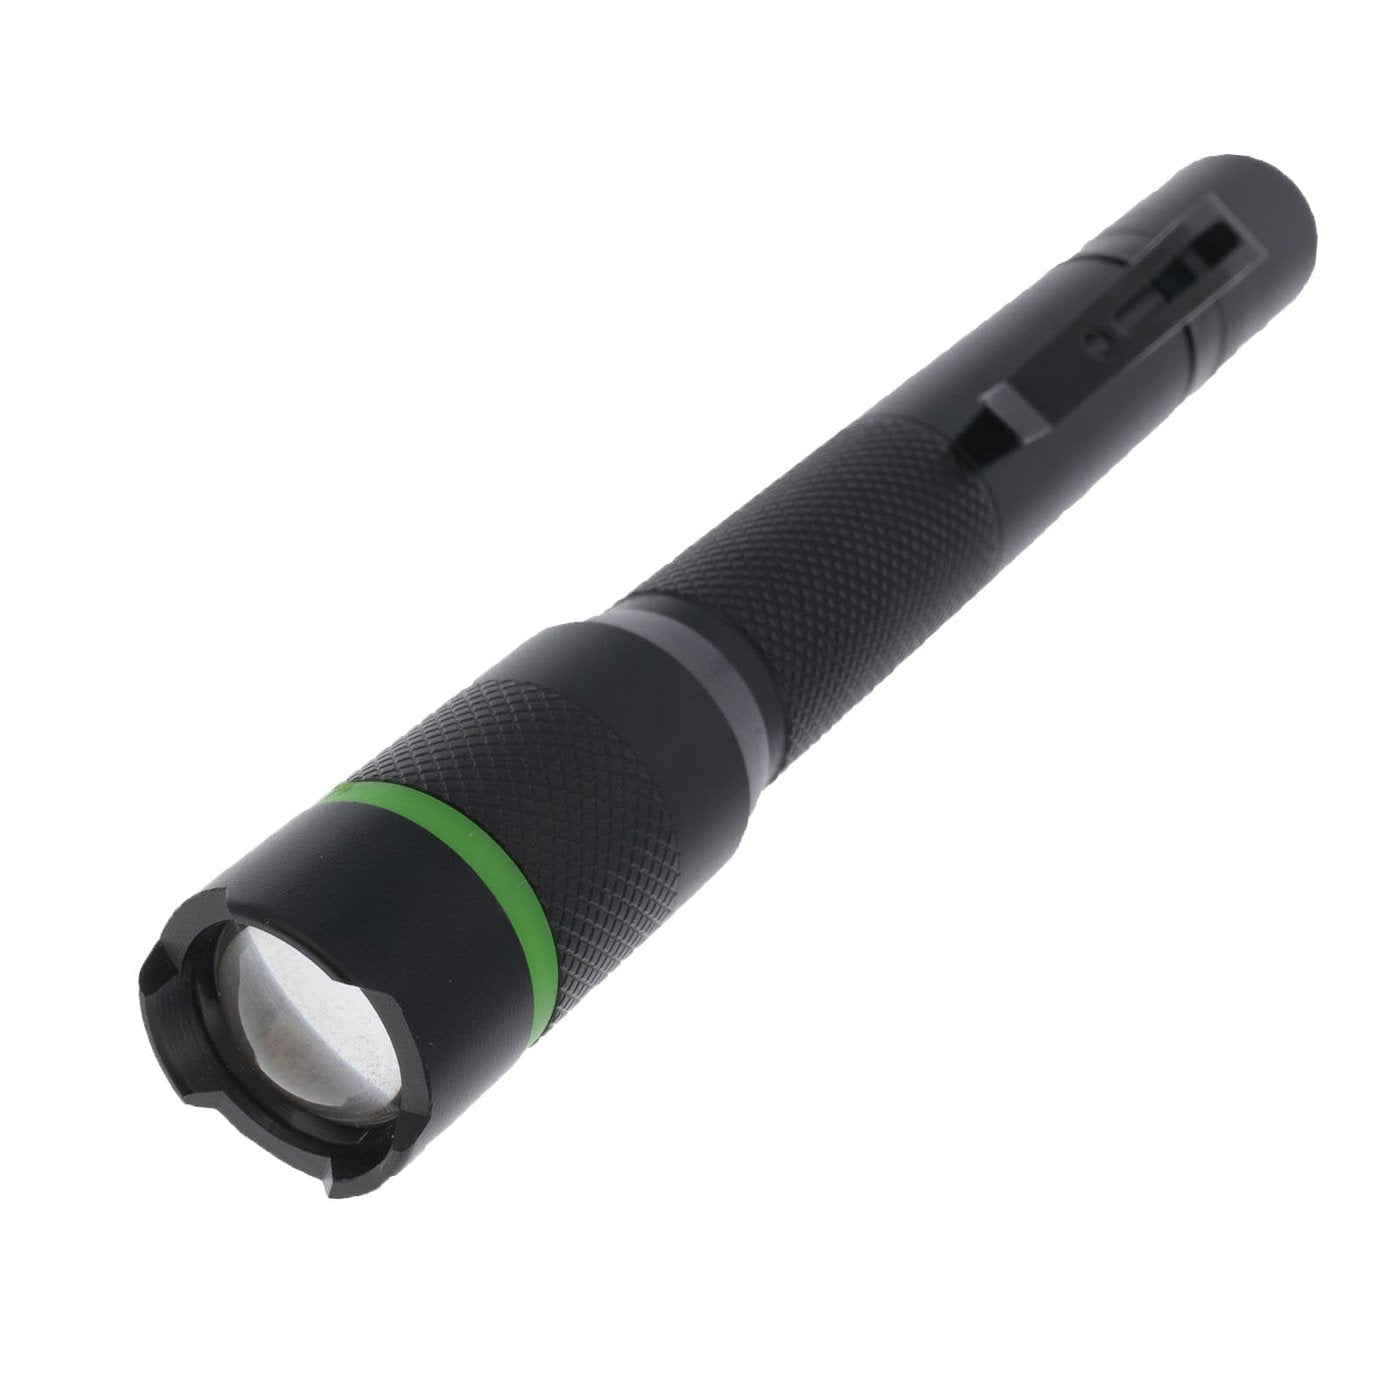 LitezAll | 250 Lumen Pen Light, Flashlight, LitezAll, Defiance Outdoor Gear Co.